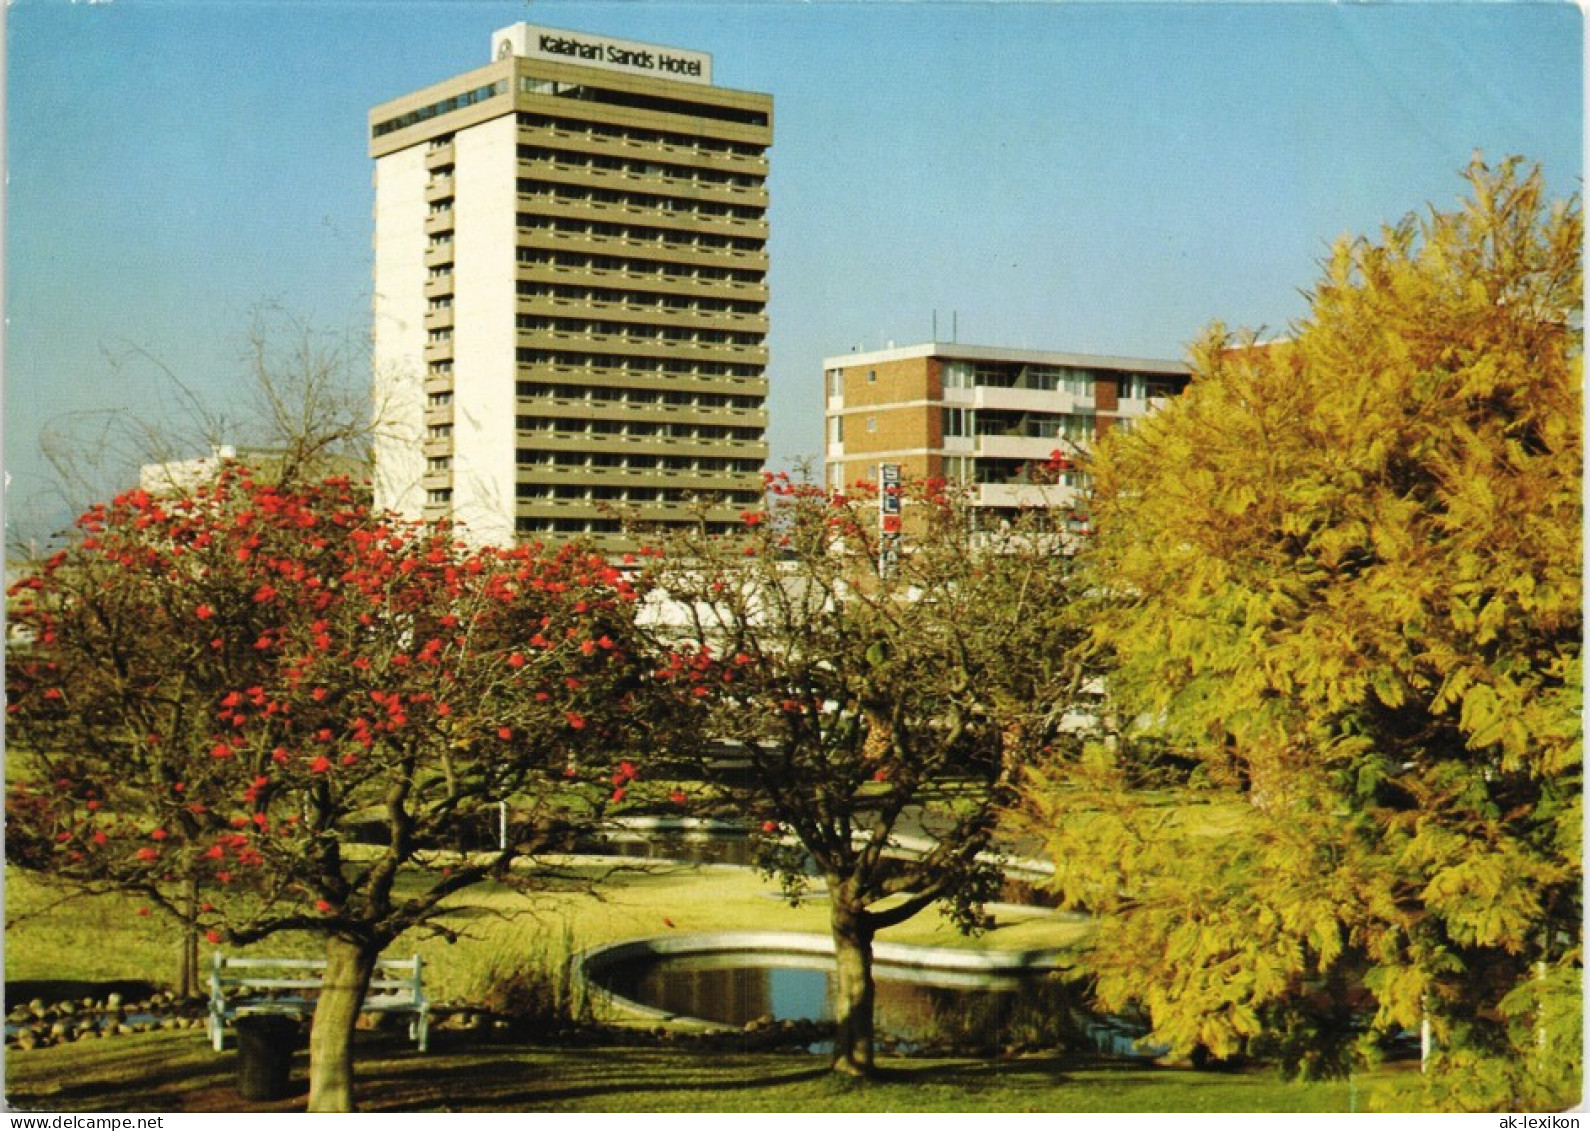 Postcard Windhuk Windhoek Kalaharl Sands Hotel, SWA Namibia Afrika 1965 - Namibia